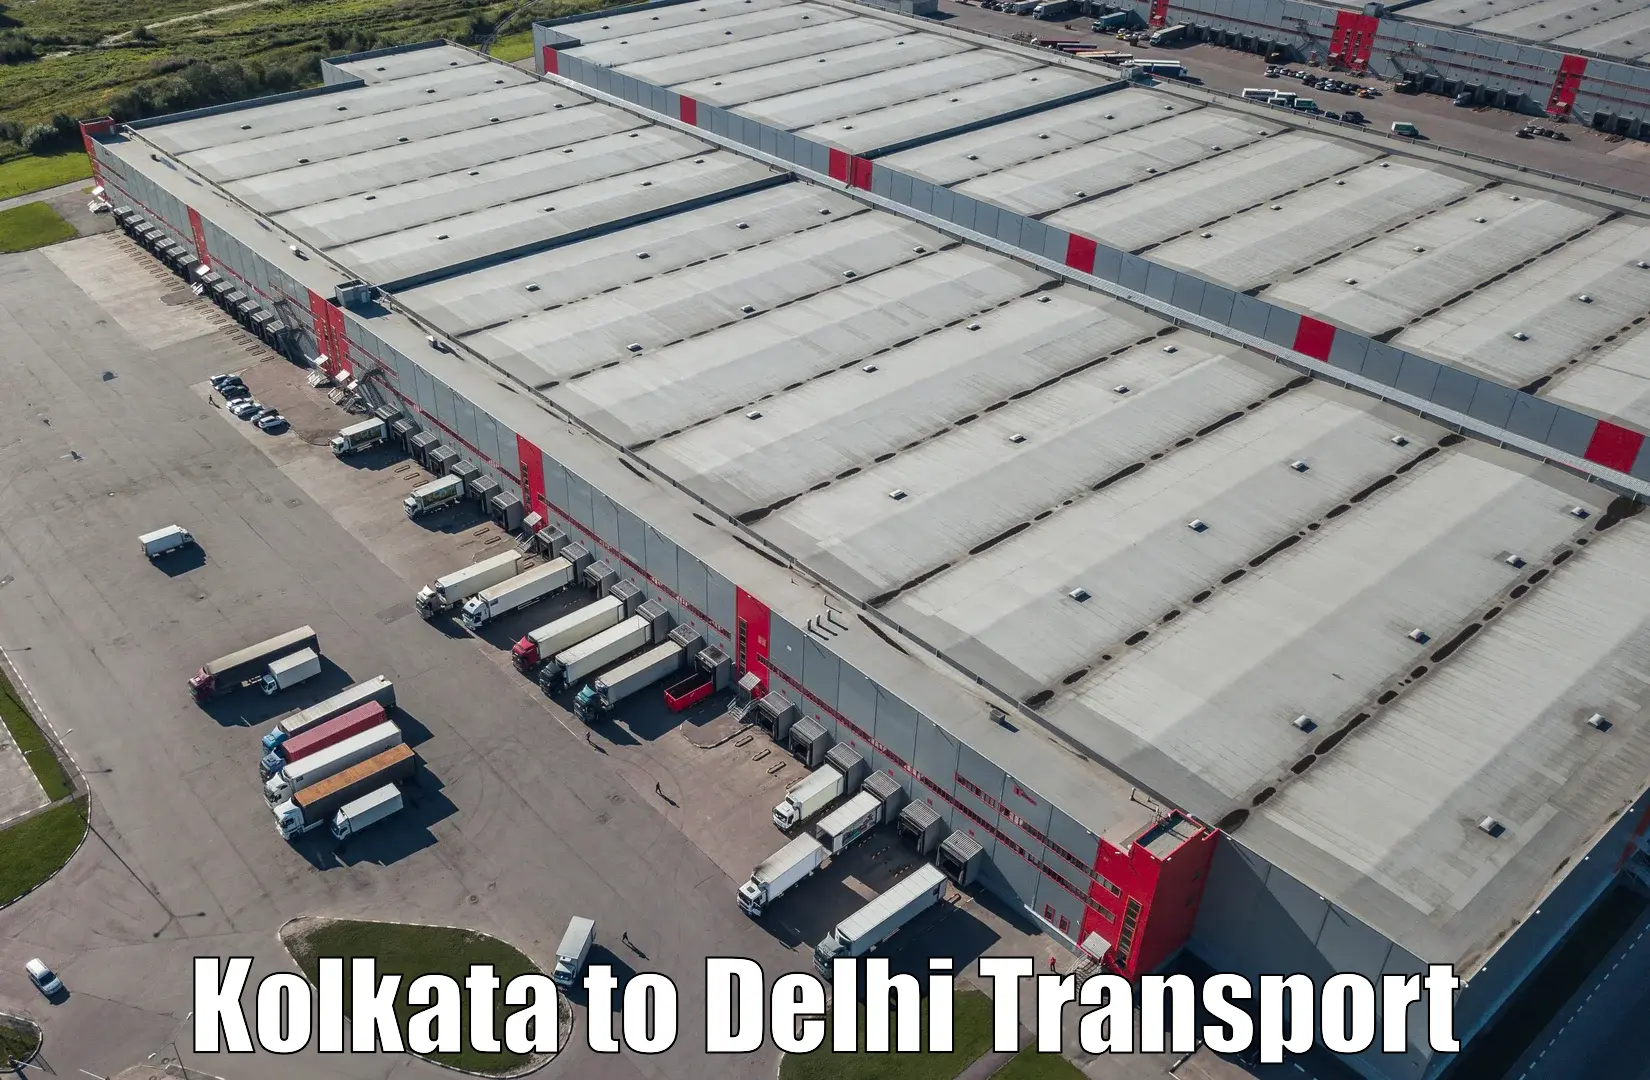 Commercial transport service Kolkata to Kalkaji